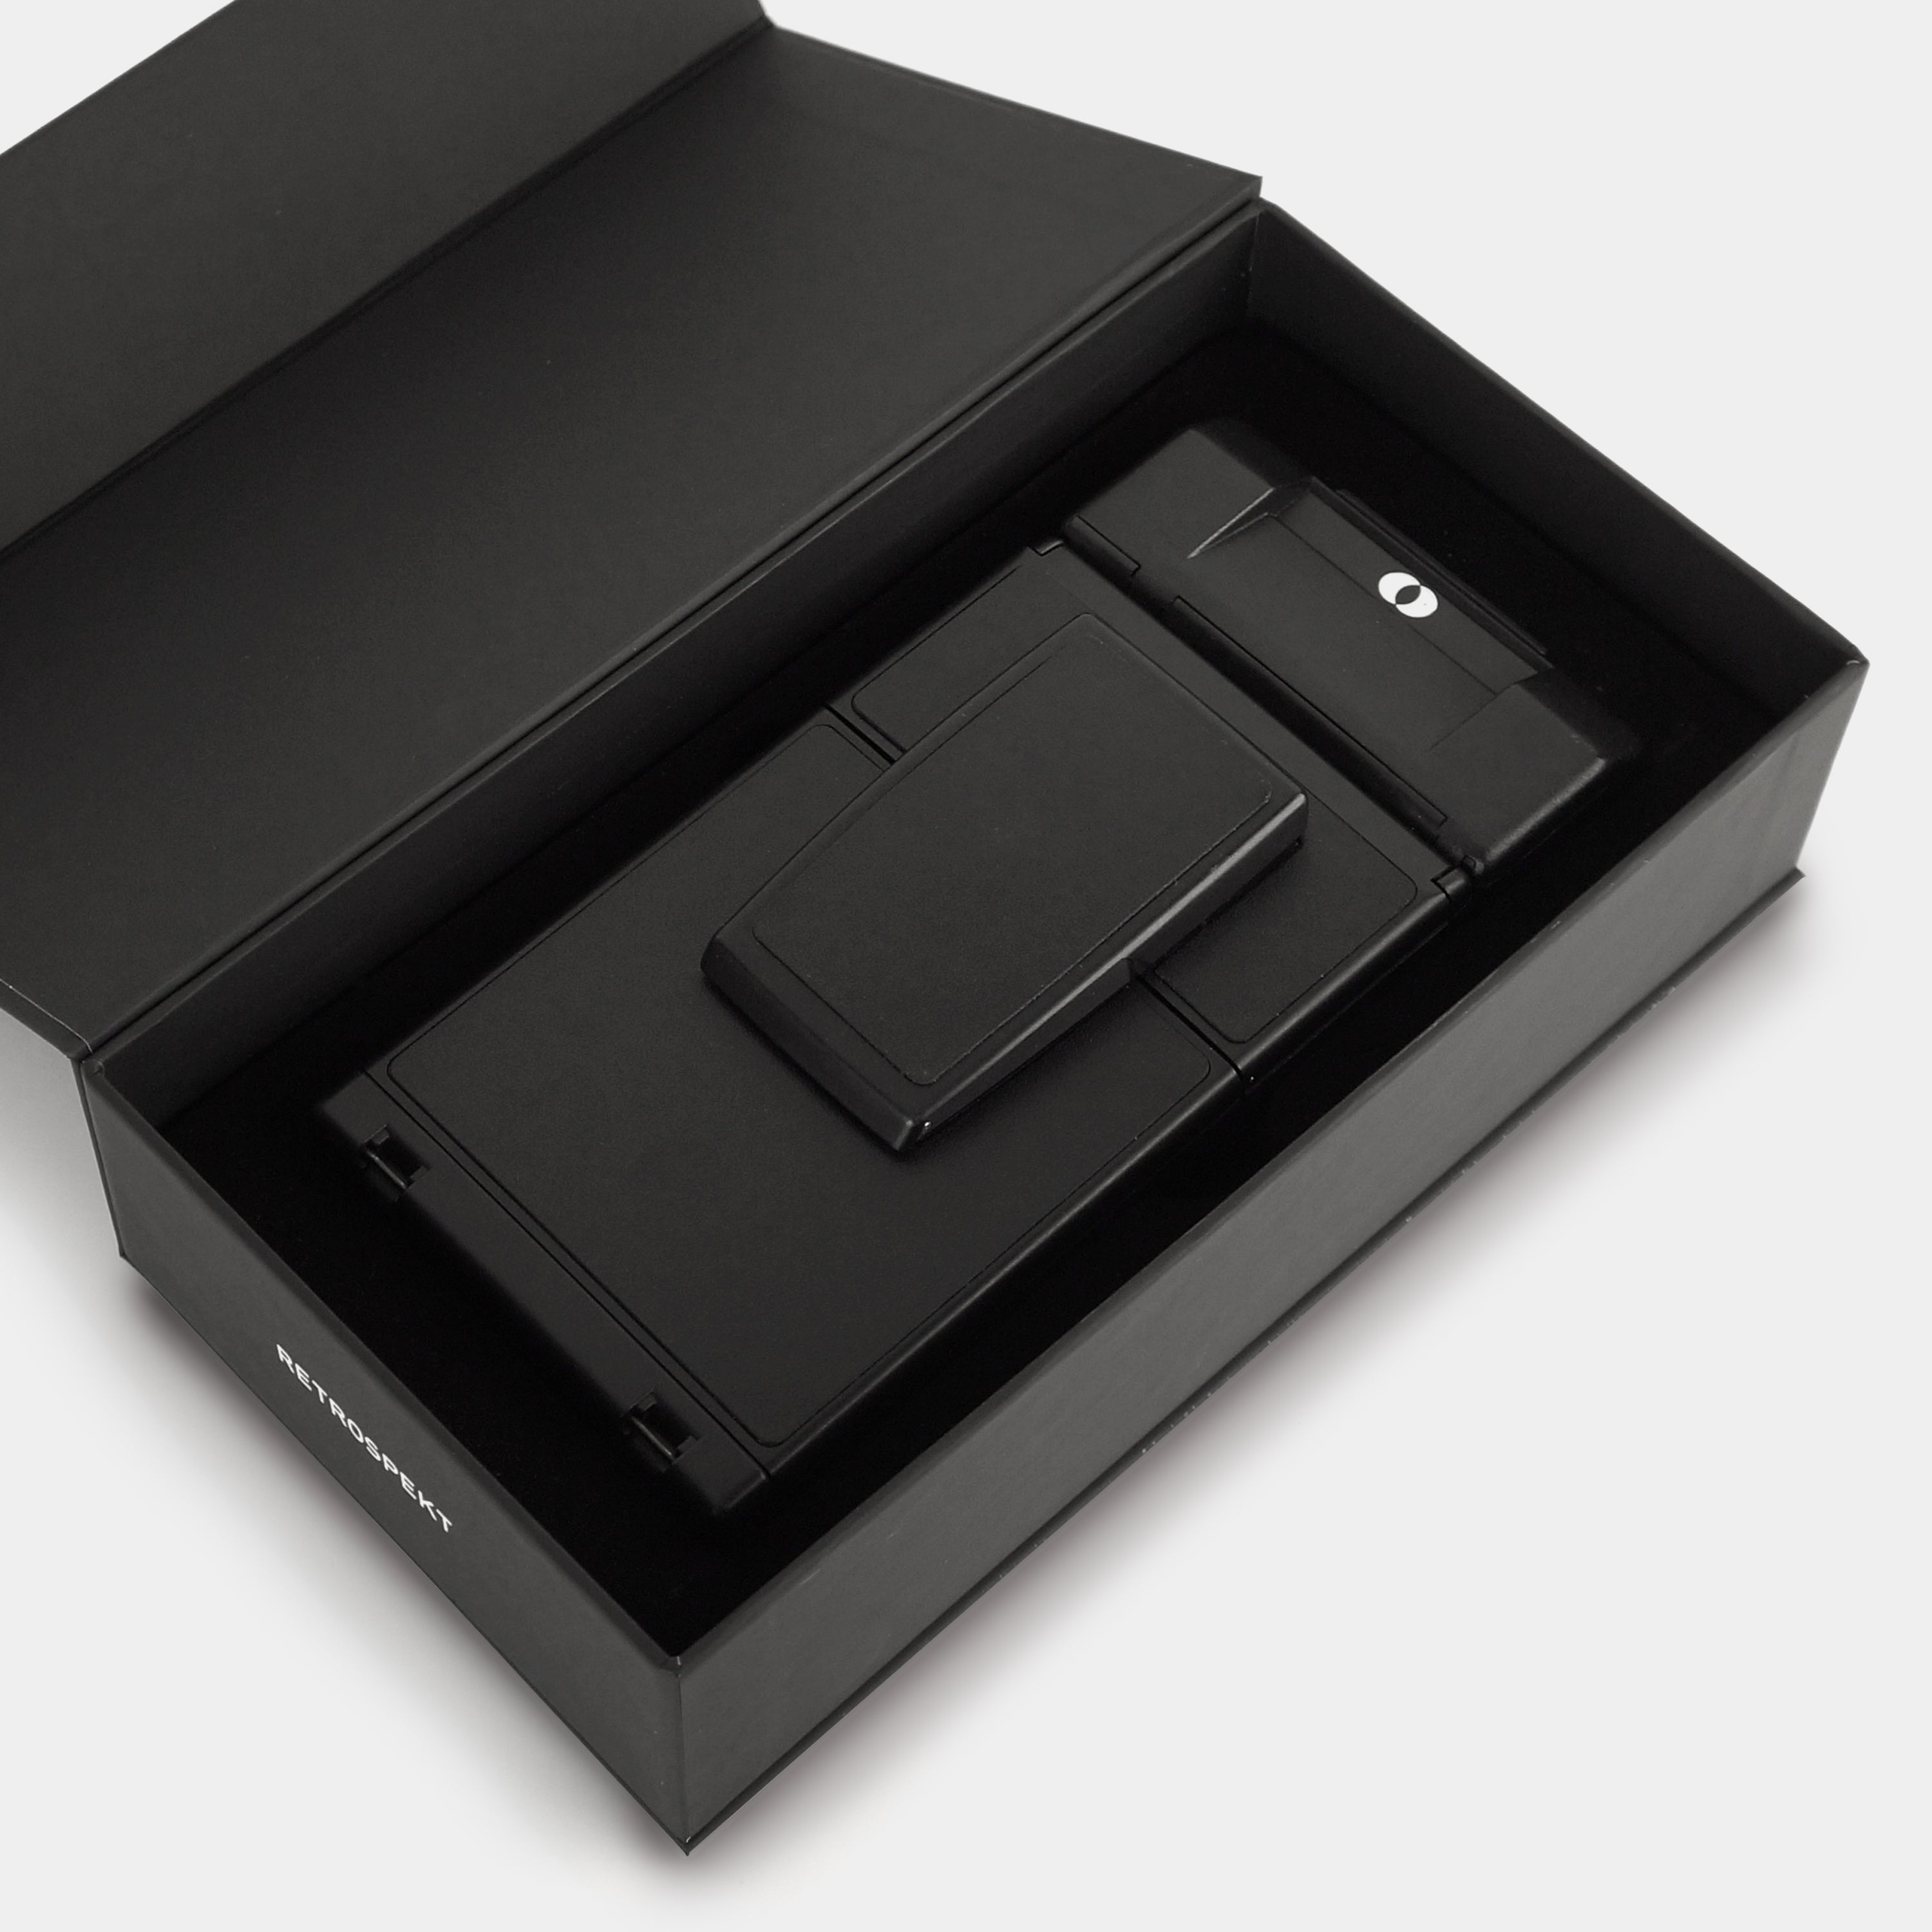 Polaroid SX-70 Sonar Autofocus Black Folding Instant Film Camera